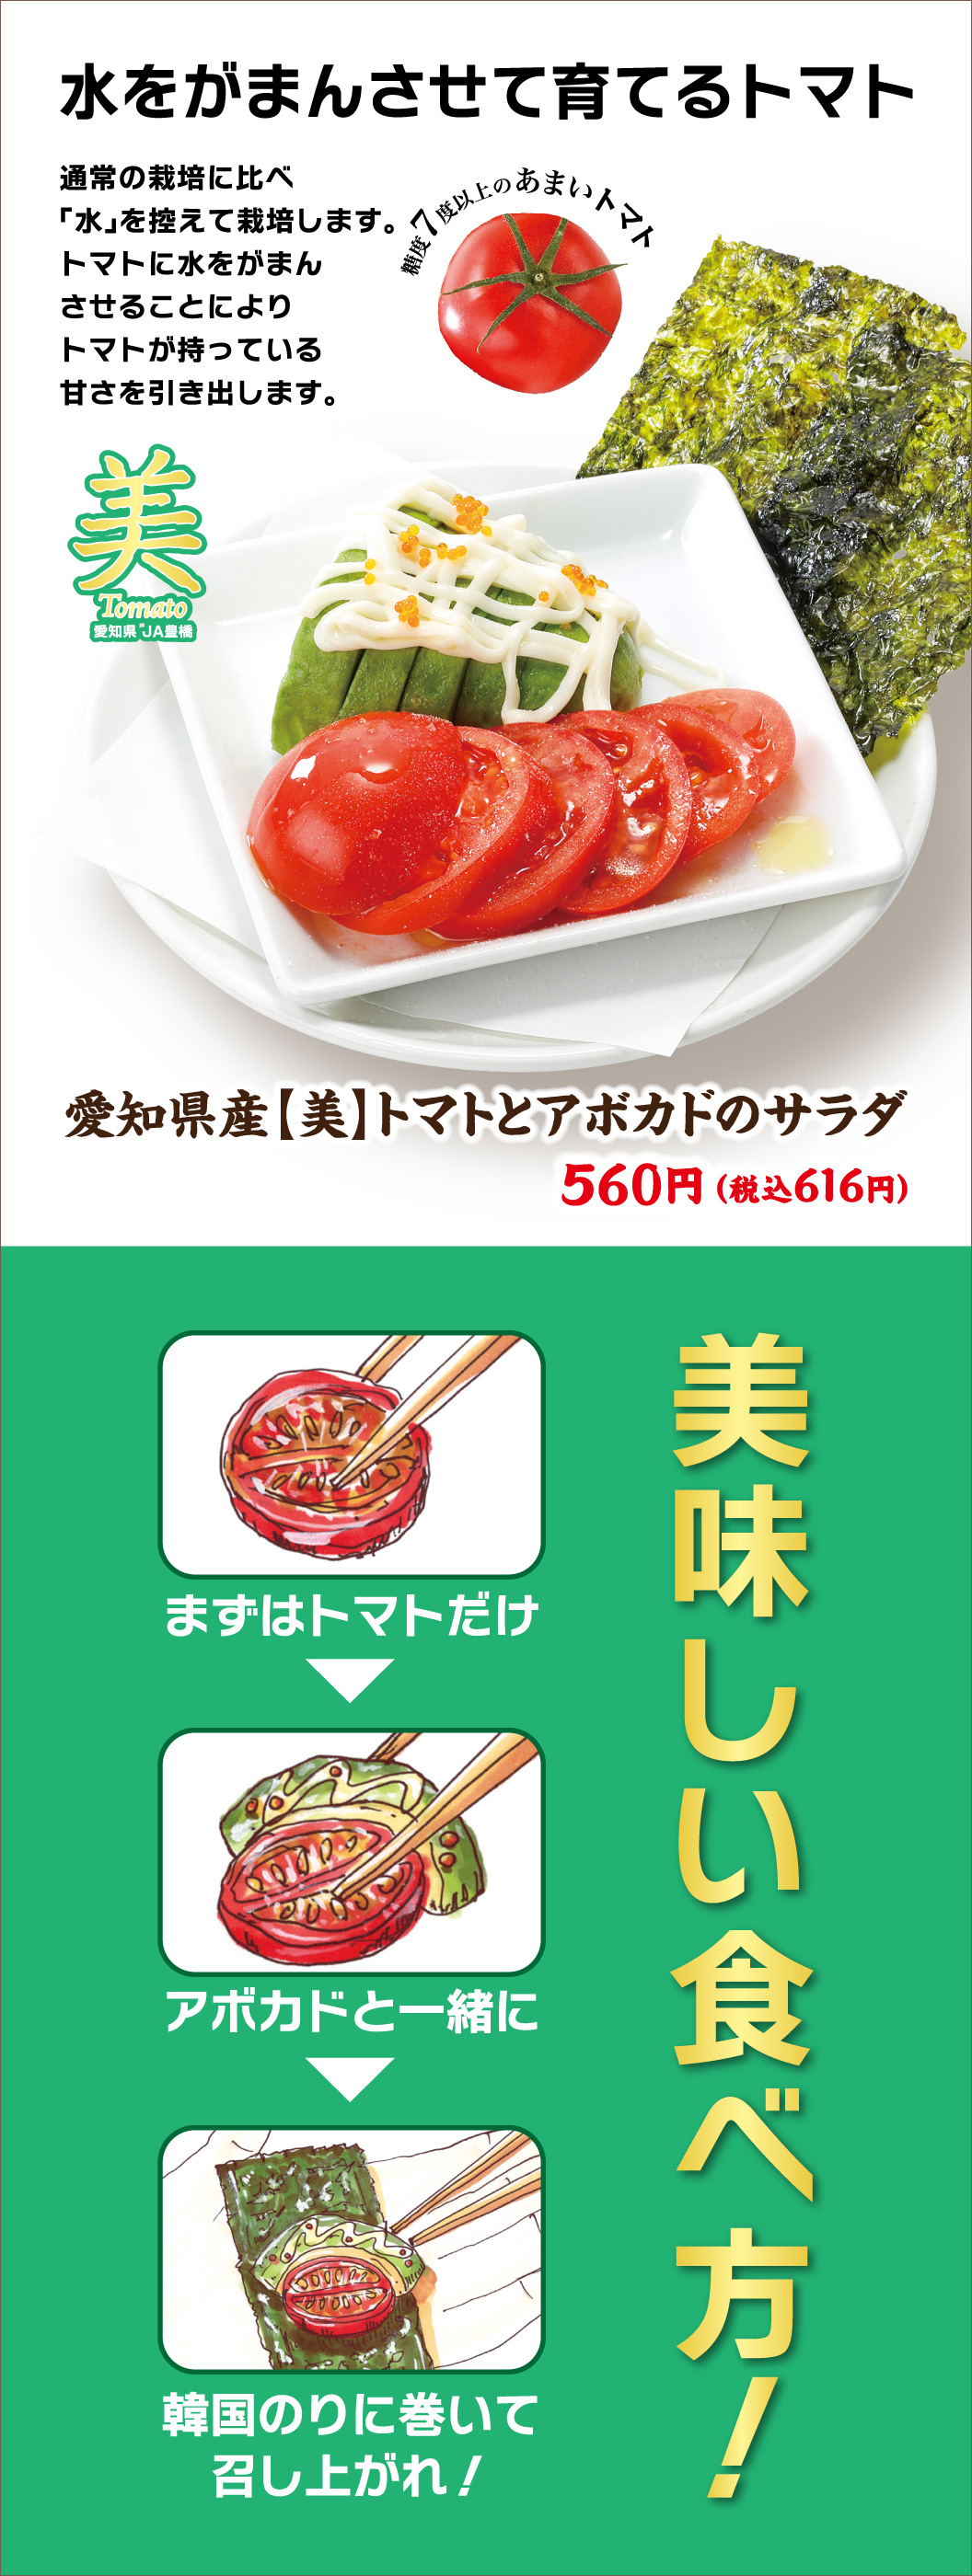 Aichi Prefecture [Beauty] Tomato and Avocado Salad